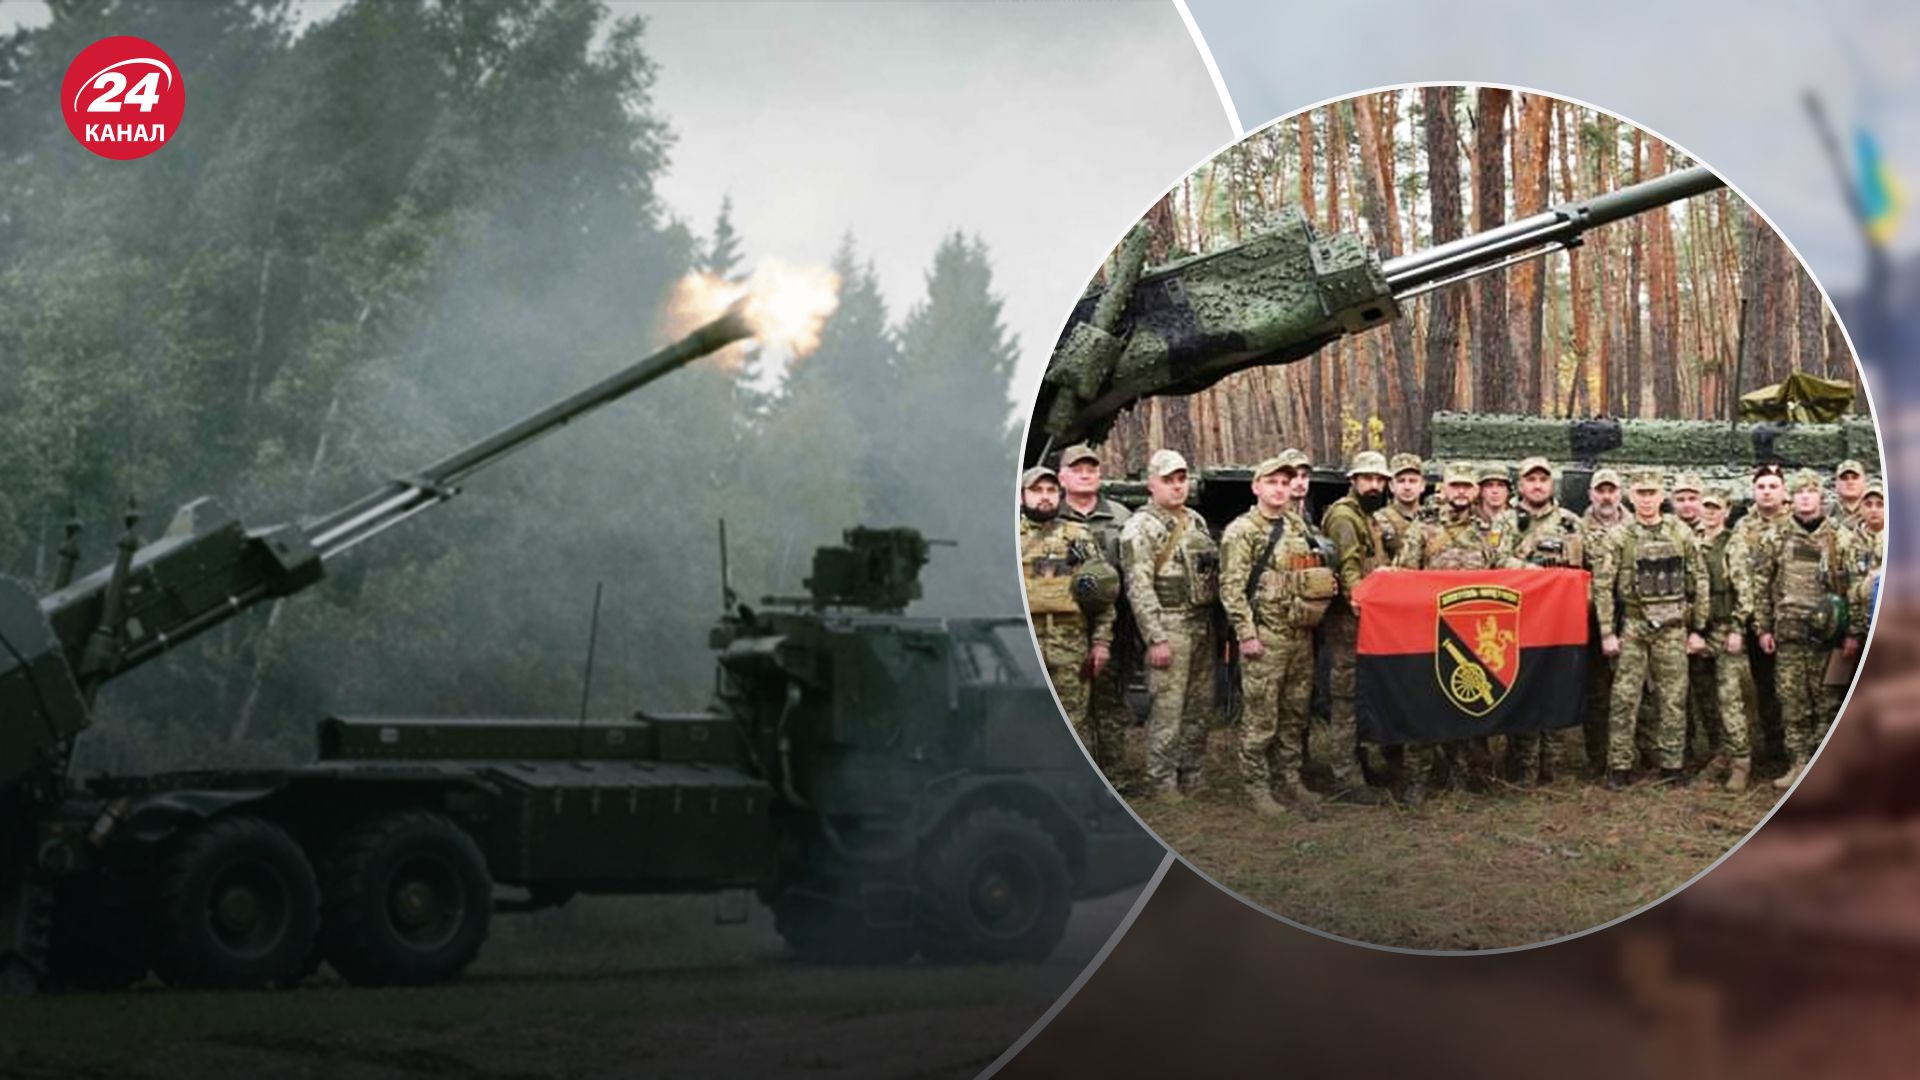 Archer для Украины от Швеции - как установка может применяться на фронте - 24 Канал